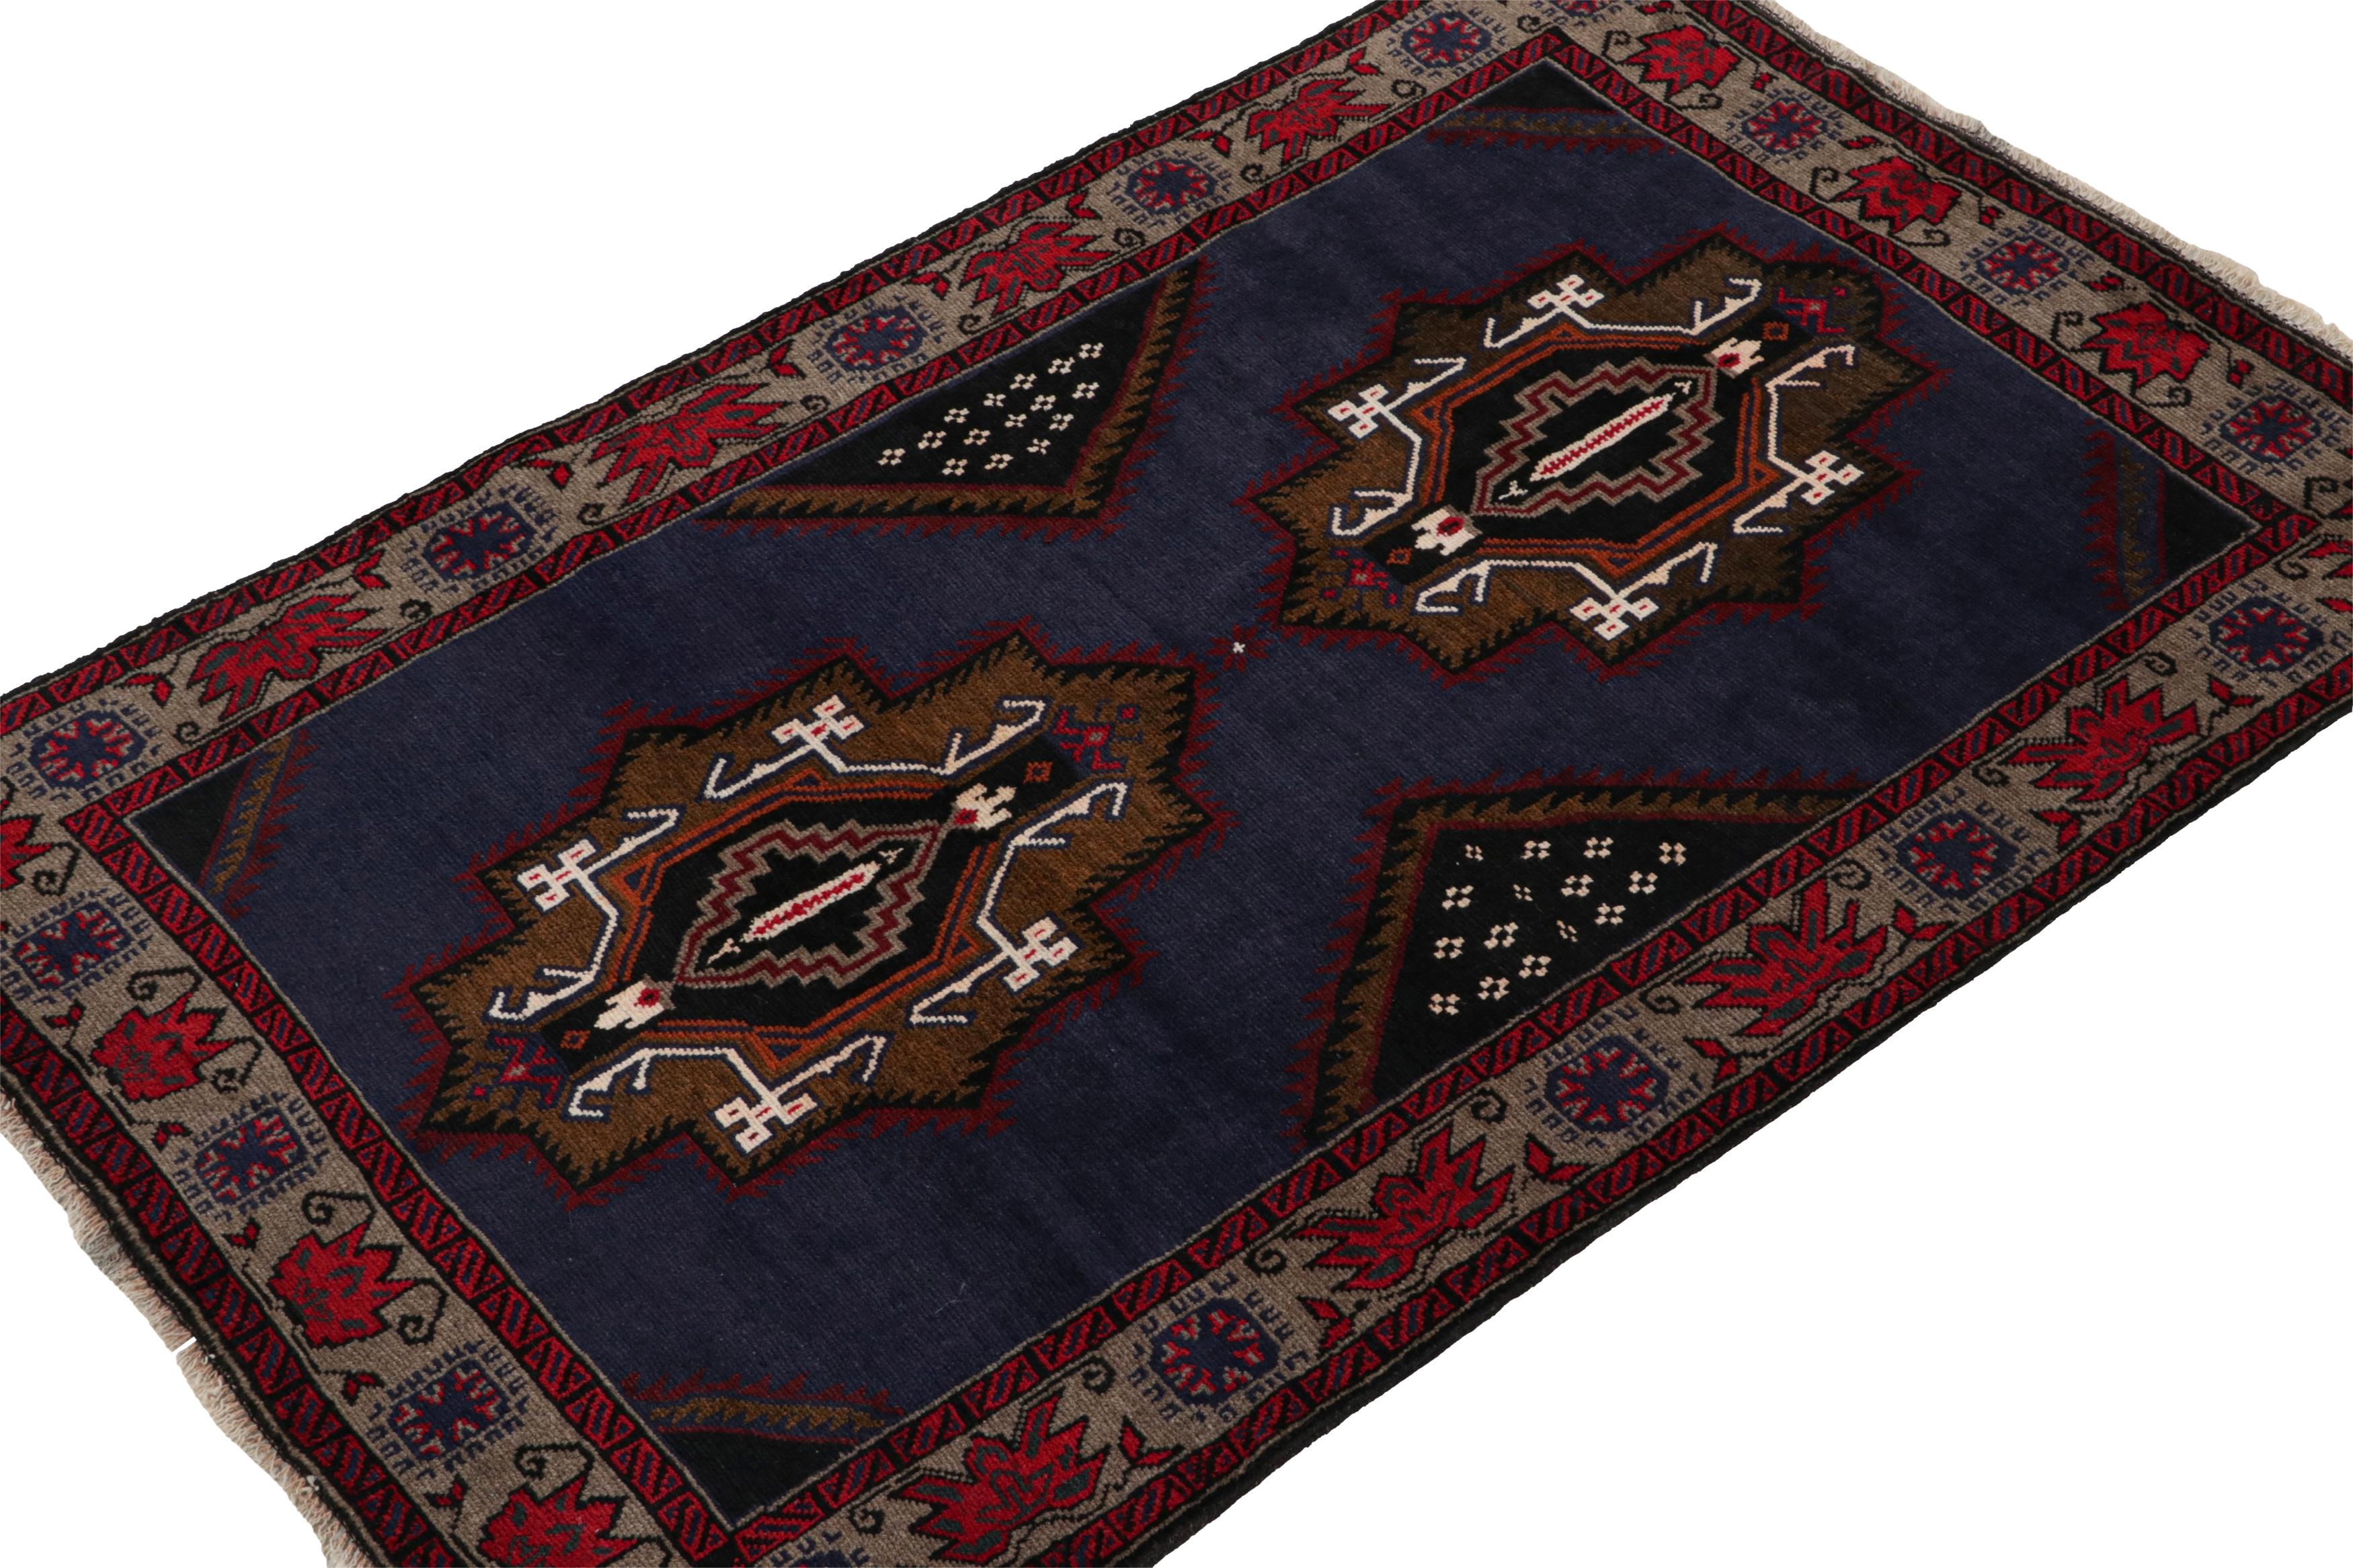 Noué à la main en laine, ce tapis persan Baluch 4x6 des années 1950 est le dernier à entrer dans la prestigieuse collection Antique & Kilim de Rug & Kilim.

Sur le Design :

La pièce se délecte du bleu avec des médaillons en or et des détails en